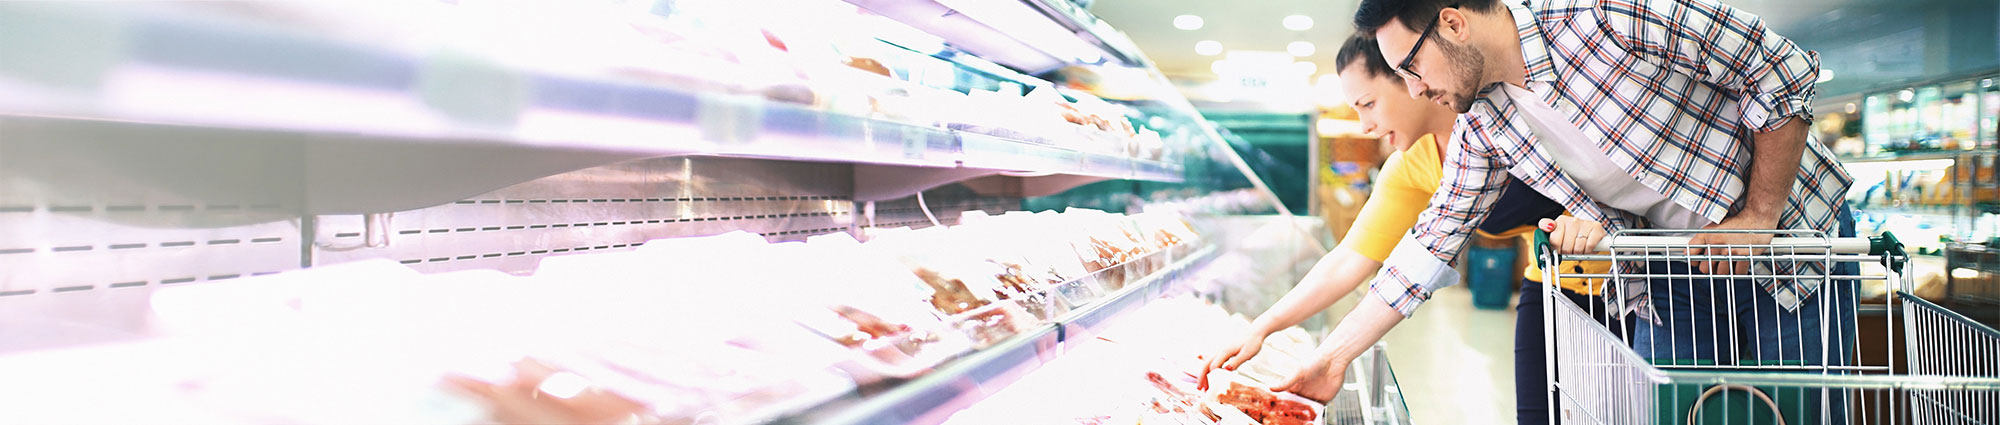 Pärchen bei der Auswahl von Fleisch im Supermarkt